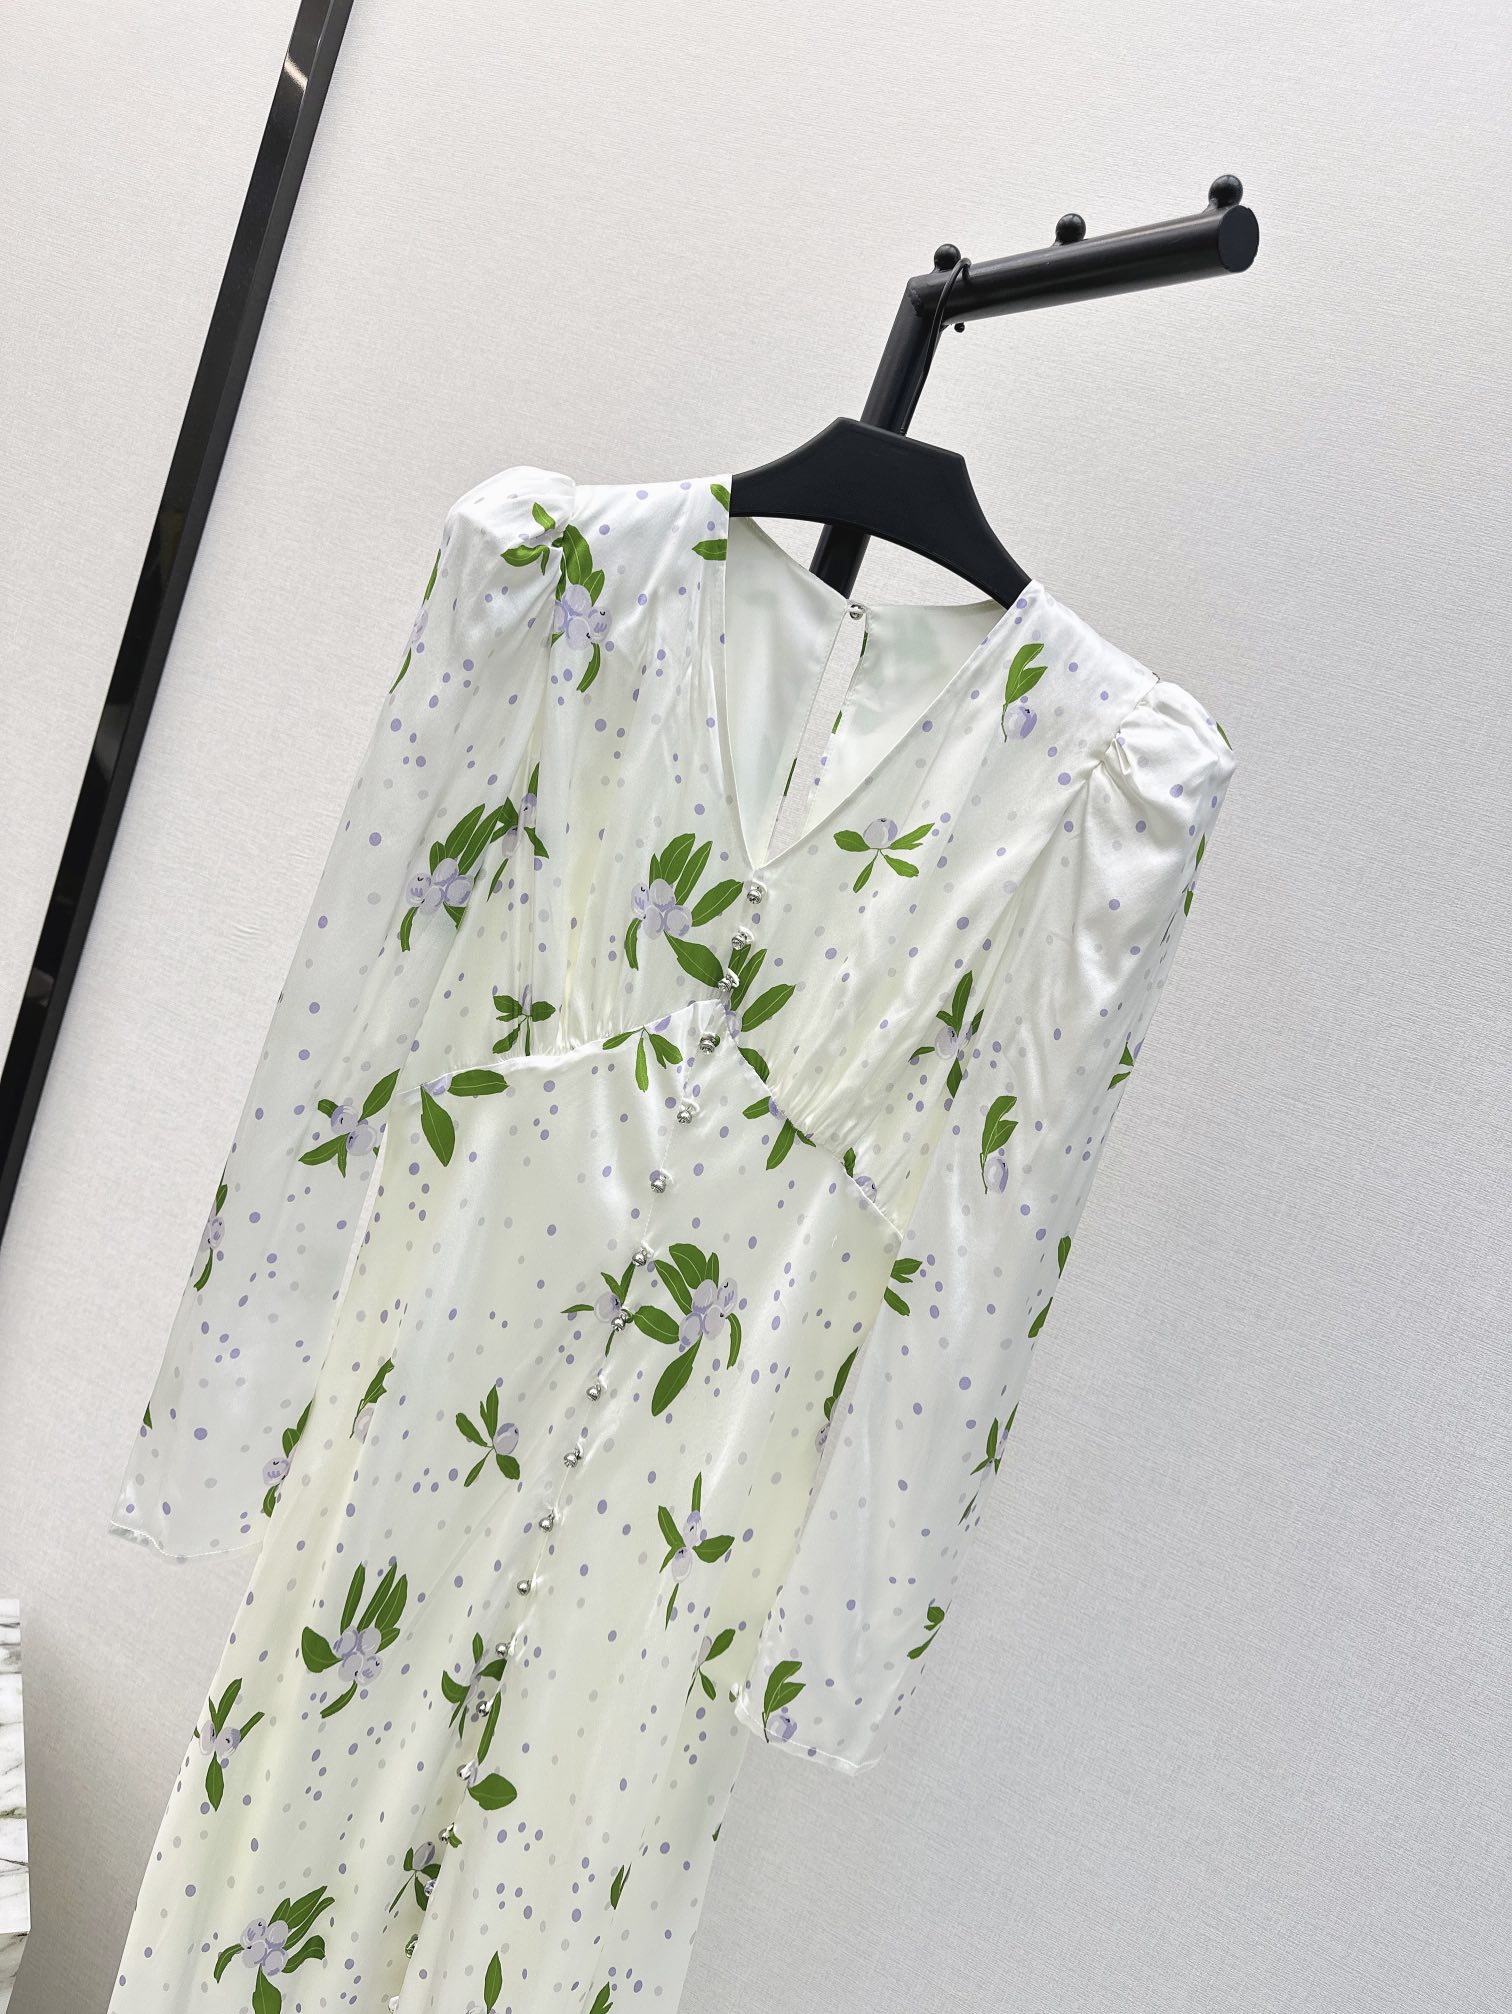 时髦小众设计24Ss春夏最新款清新长款连衣裙精美绝伦花卉印花图案淡雅清新的度假风气息浪漫优雅的白富美必备